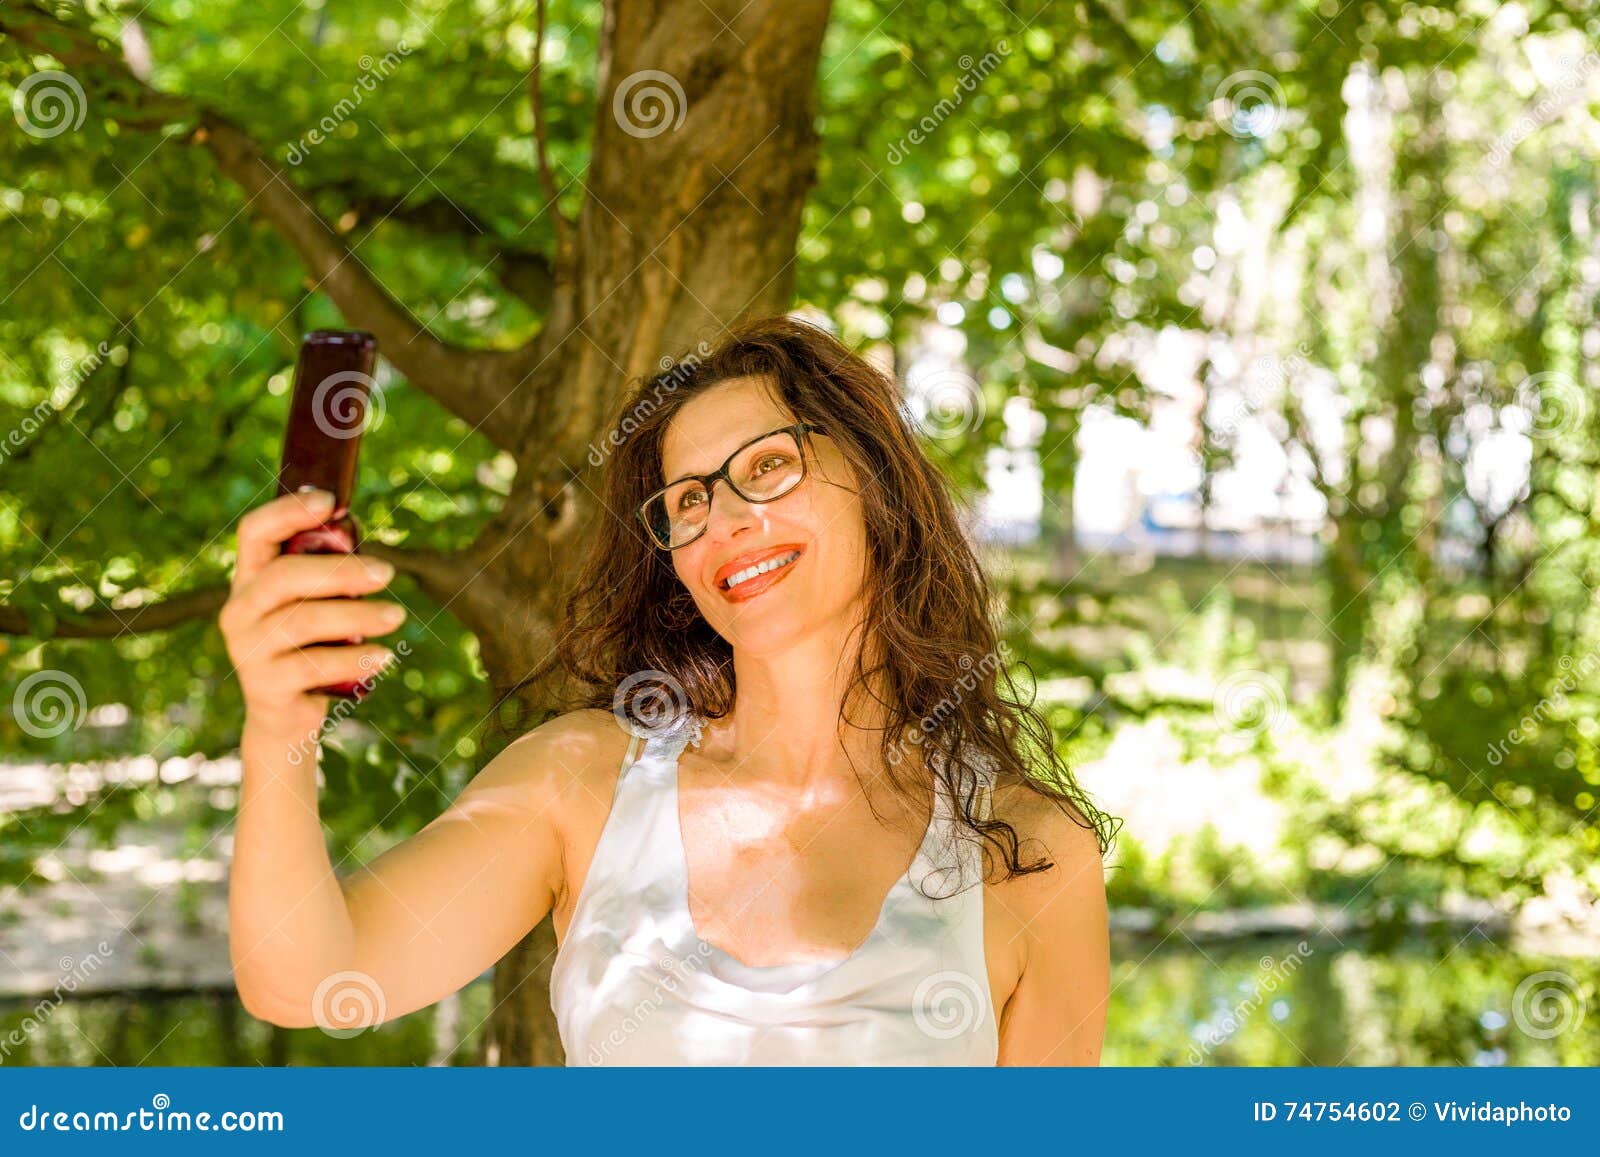 galleries huge tit milf selfies free pics